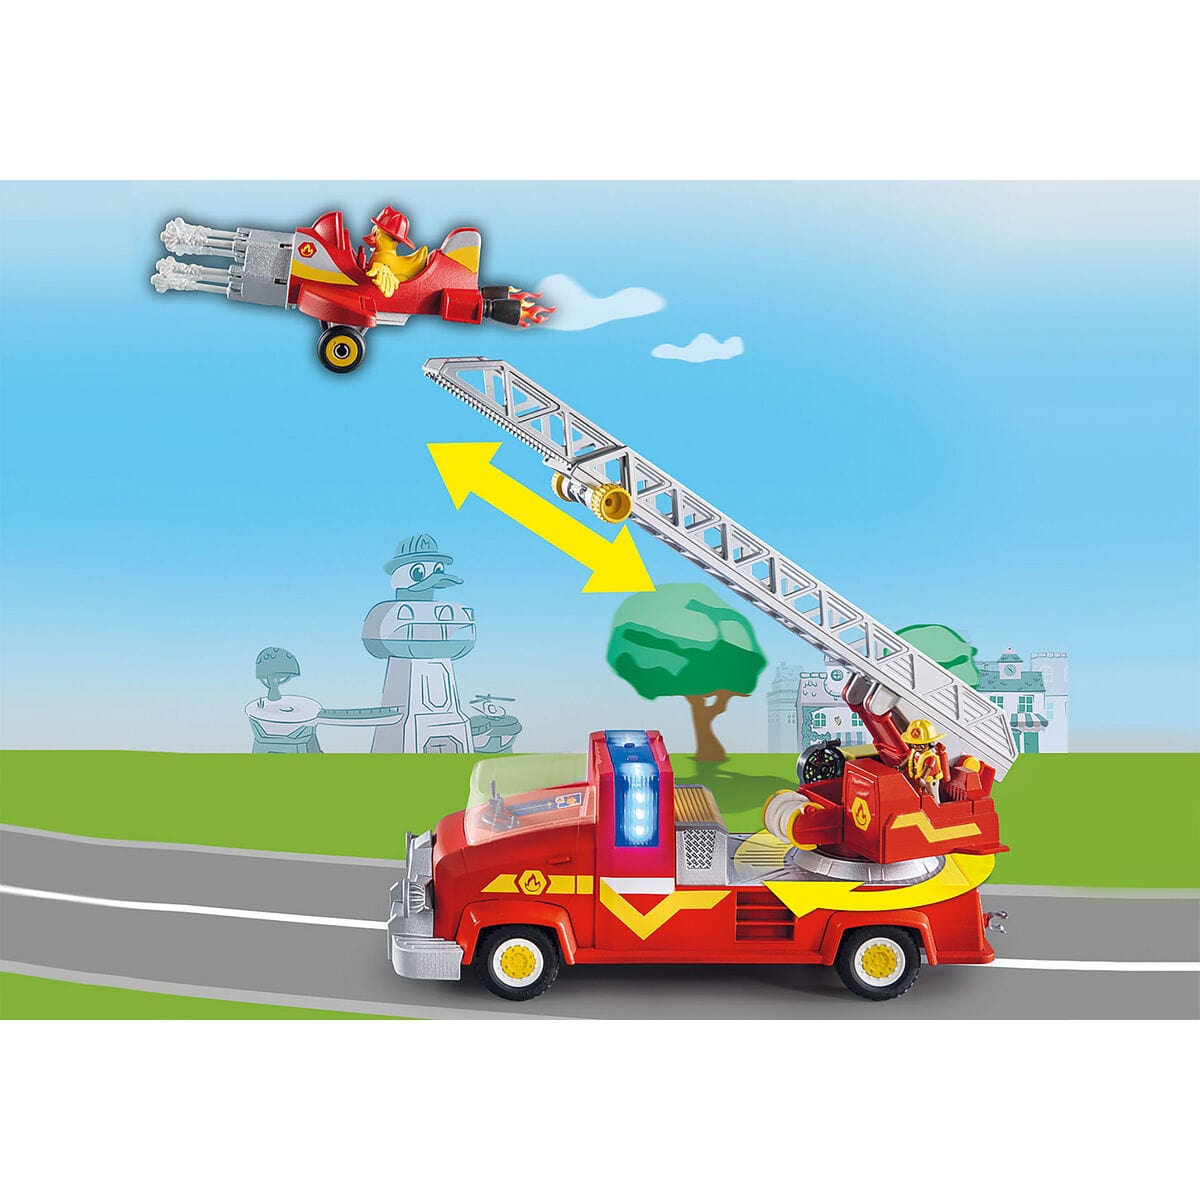 Playmobil Spielzeug | Kostüme > Spielzeug und Spiele > Action-Figuren Playset Playmobil Duck on Call